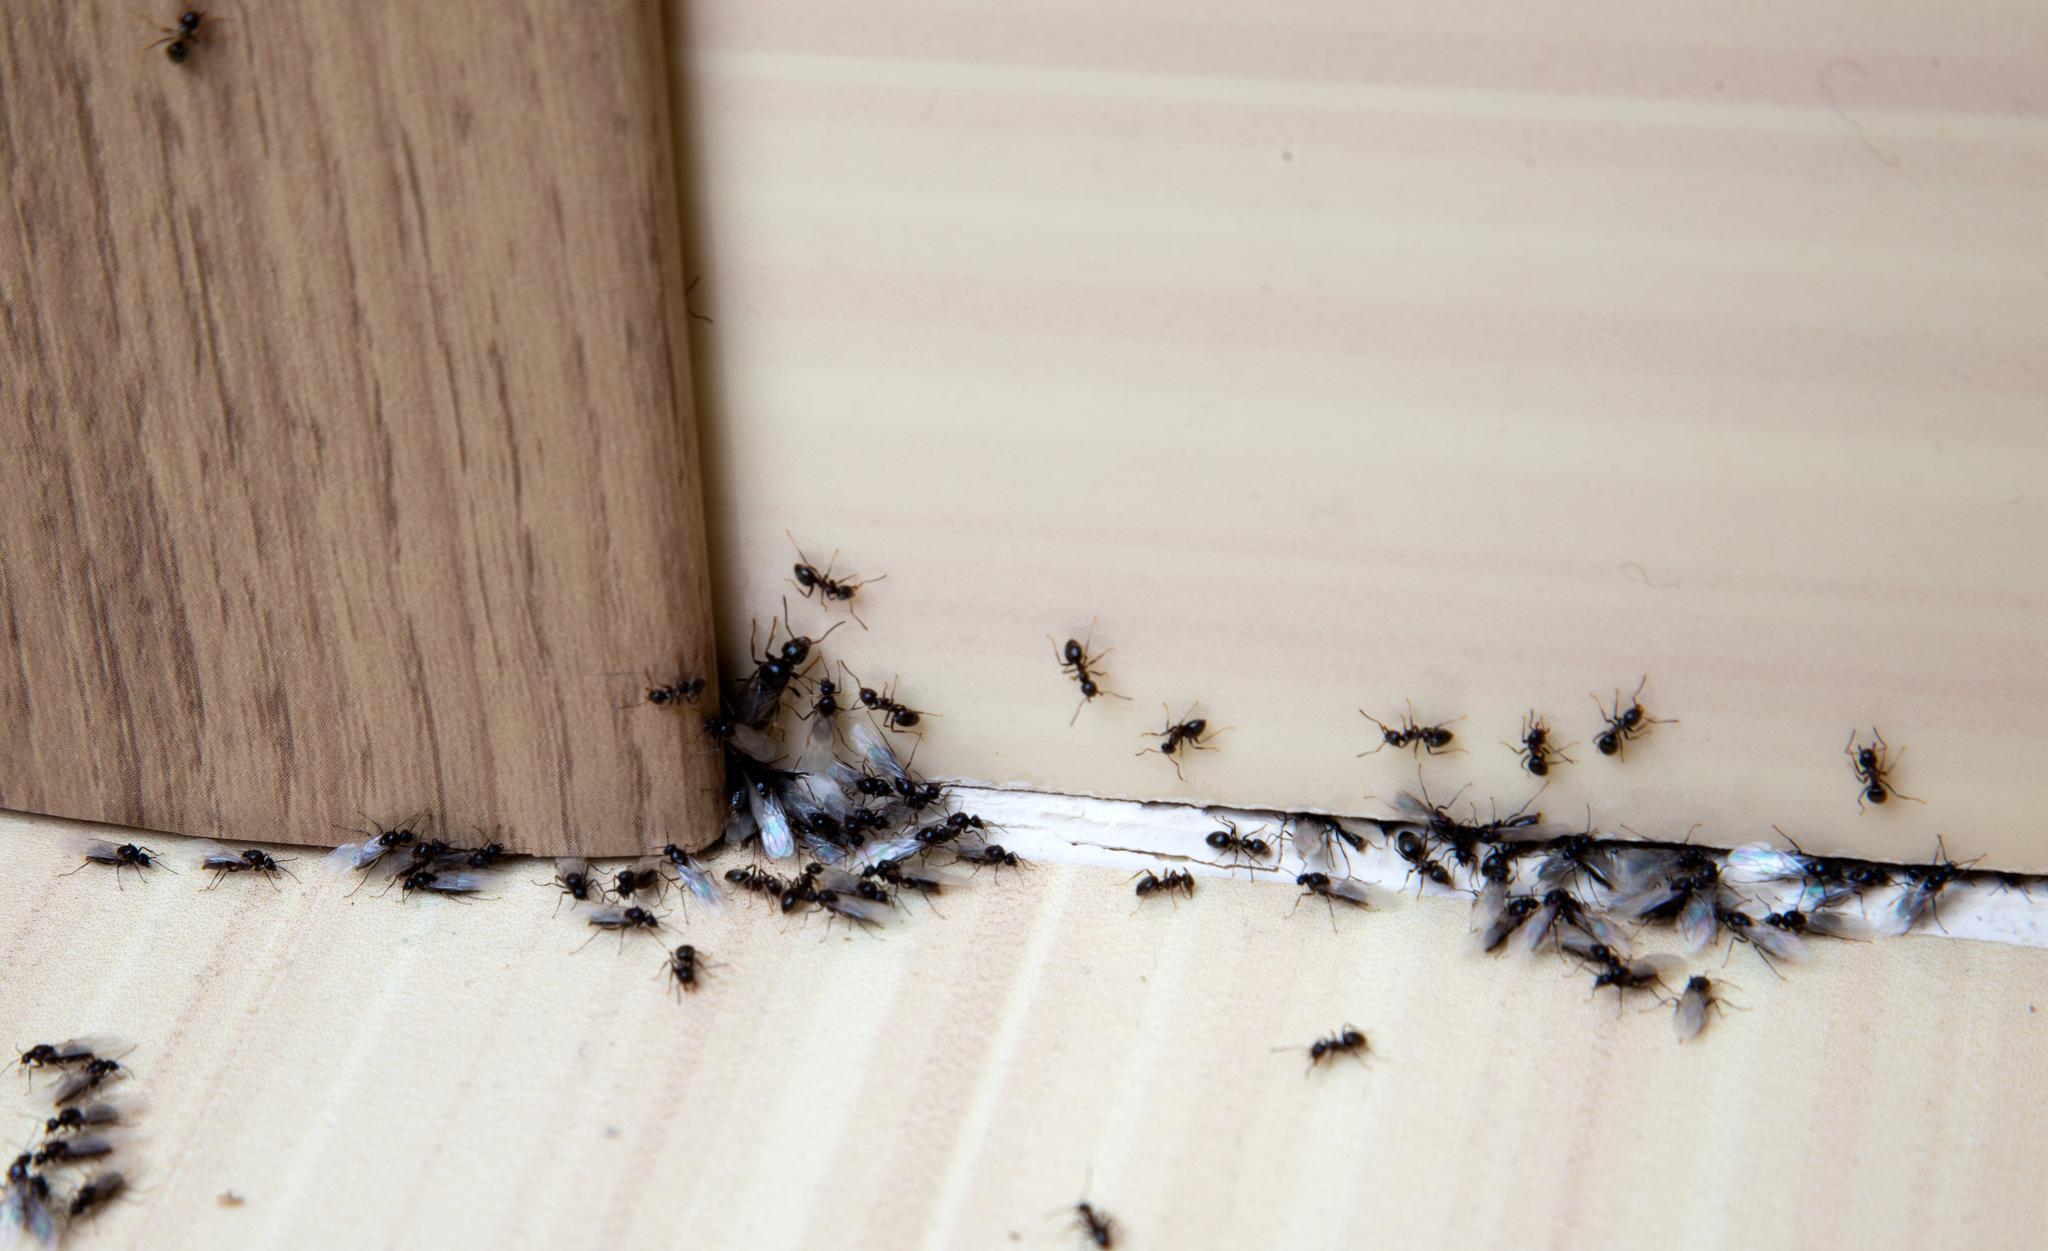 MAUR INNE: Maur kommer seg inn via sprekker og åpninger. De kan potensielt gjøre stor skade. 